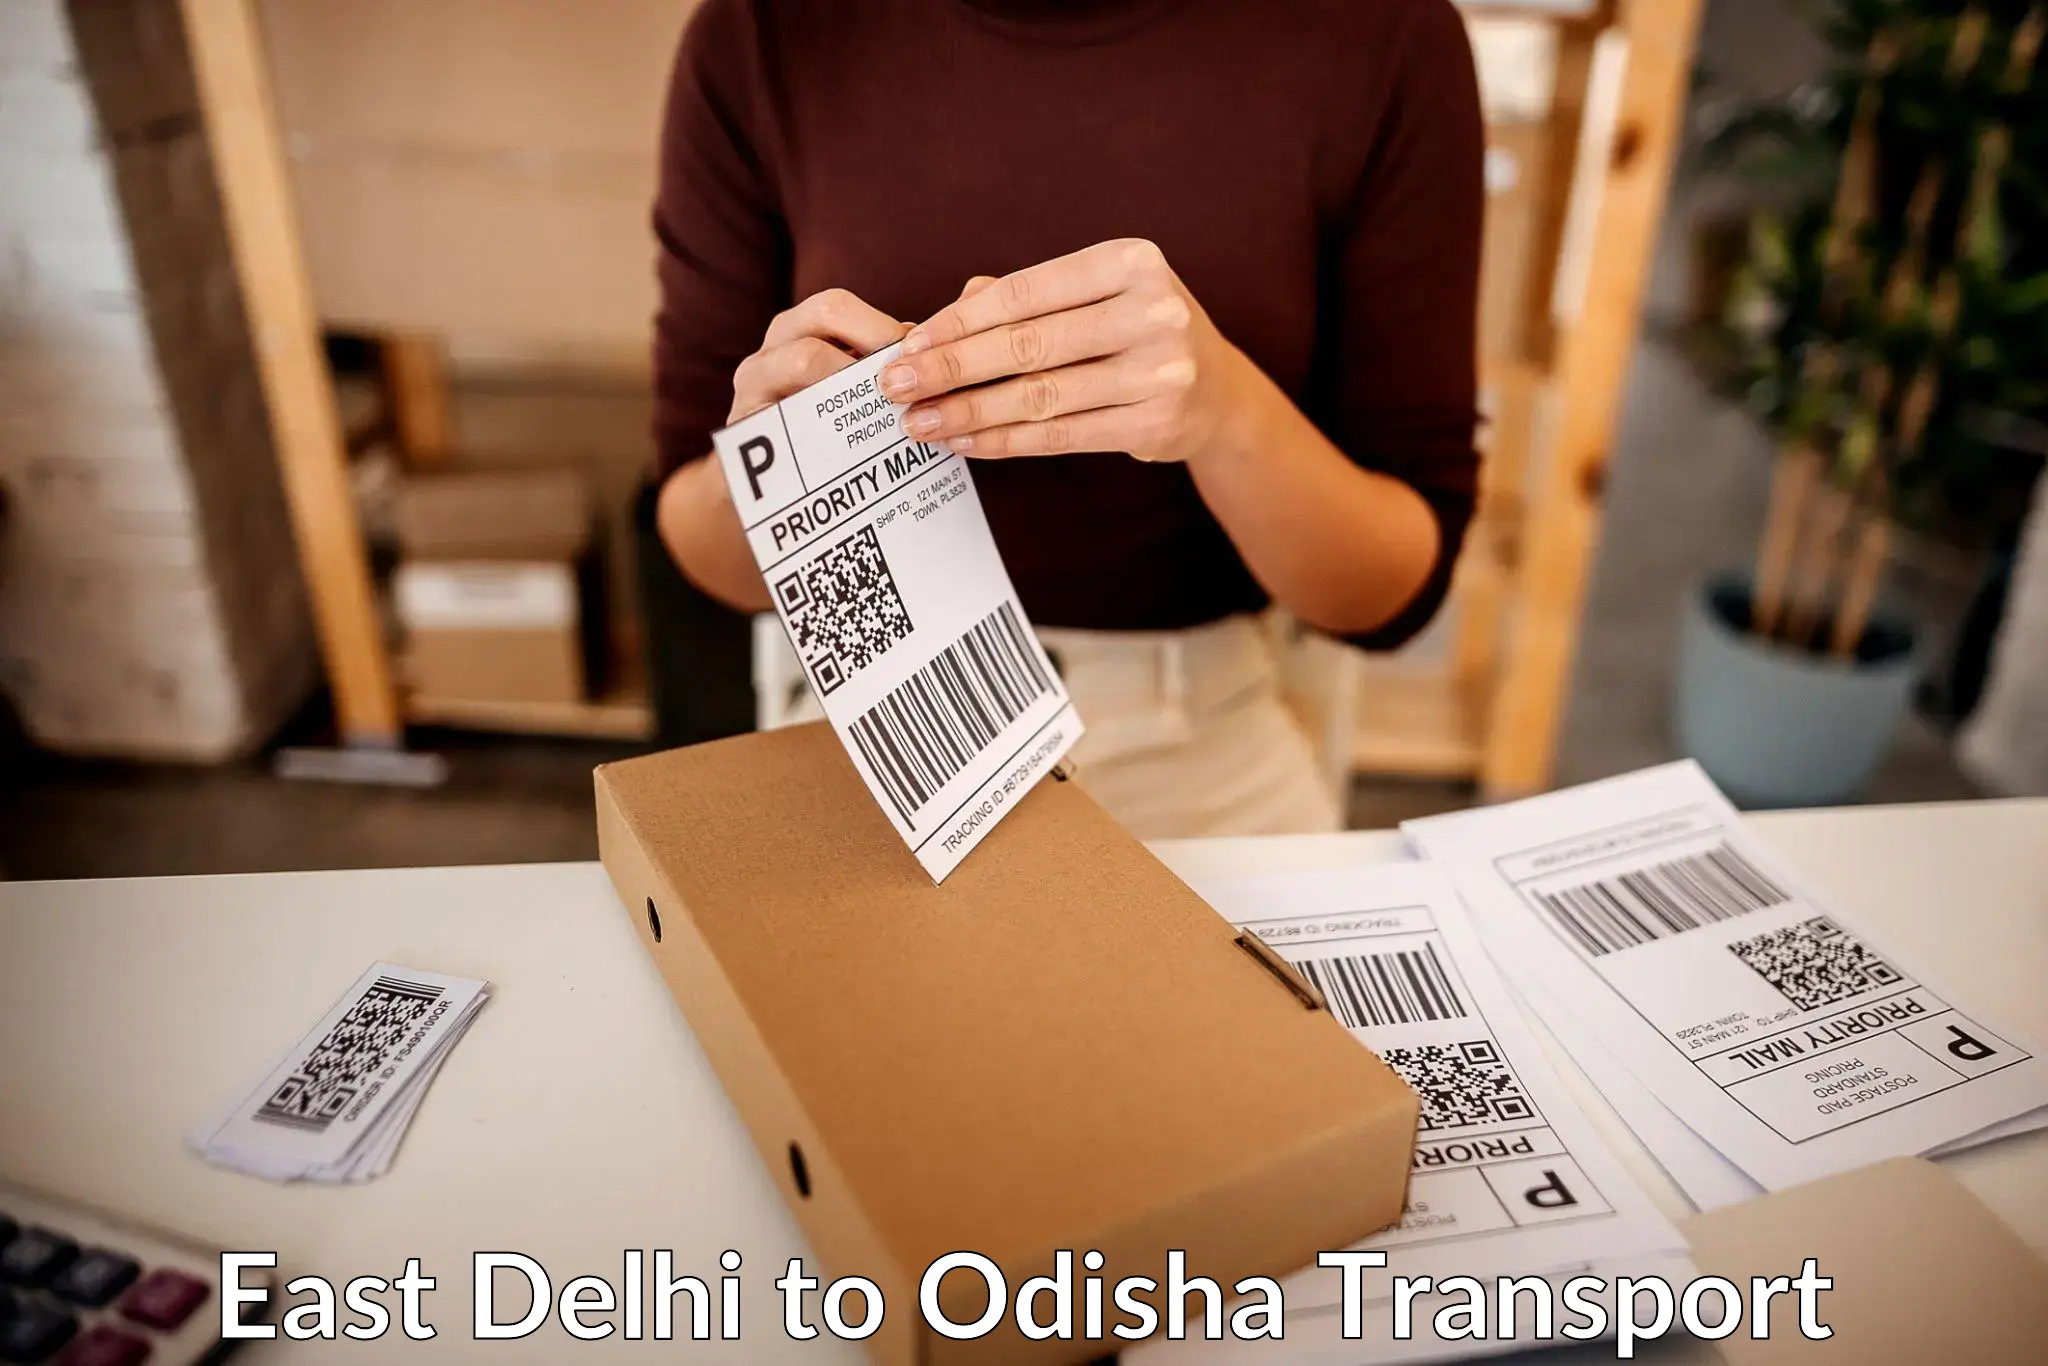 Container transport service East Delhi to Kalimela